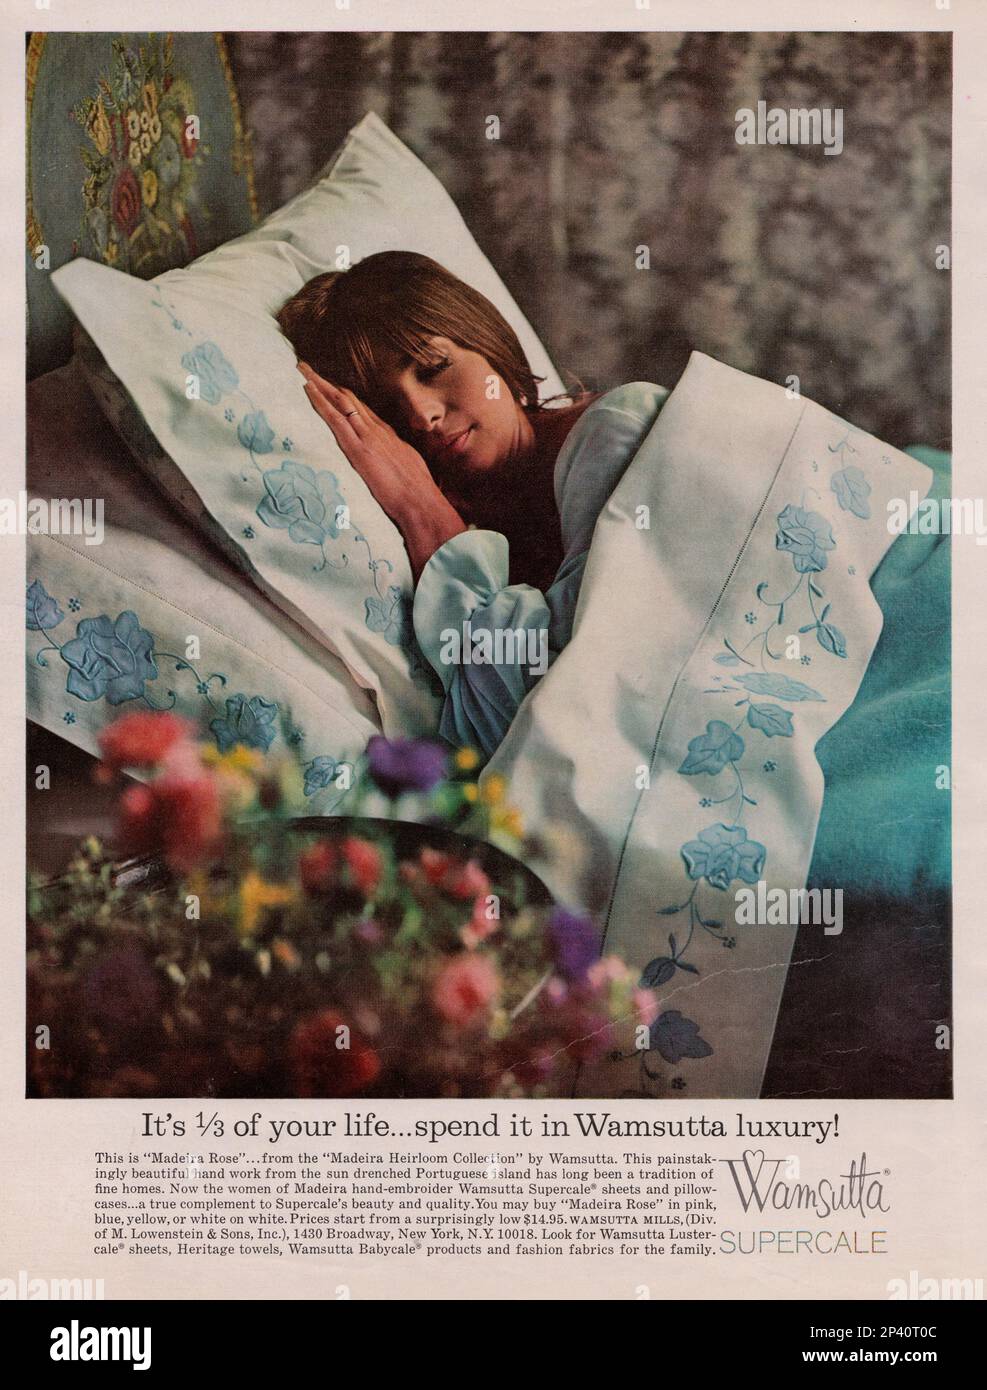 Wamsutta superscale tessuti moda Wamsutta bedlinien Wamsutta letti lenzuola vintage rivista pubblicità 1960s Foto Stock